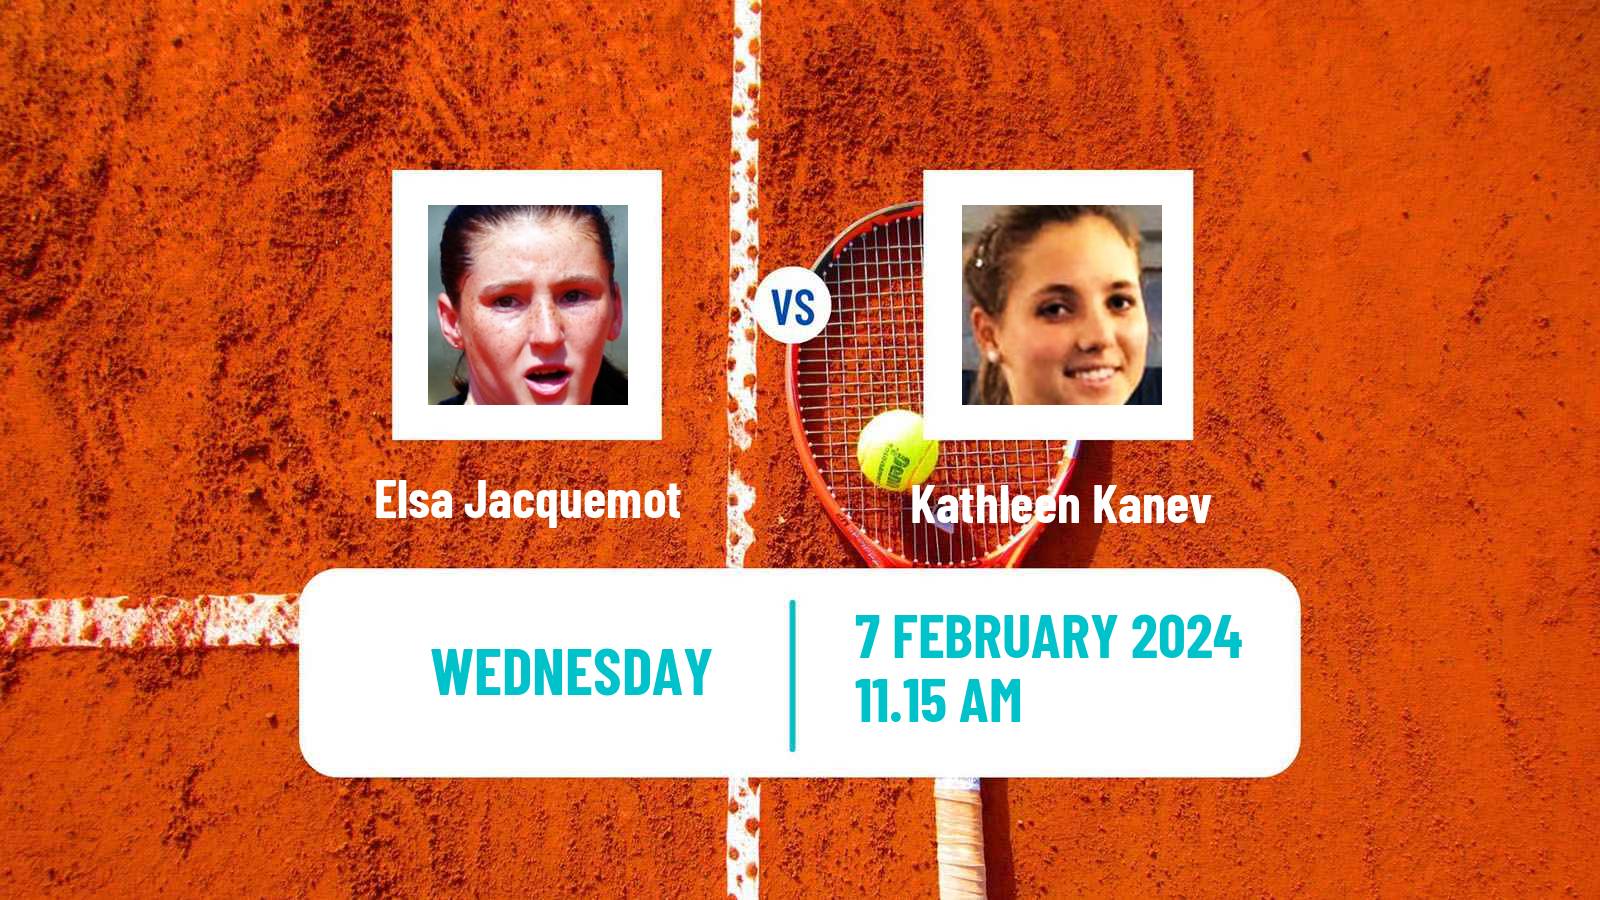 Tennis ITF W75 Grenoble Women Elsa Jacquemot - Kathleen Kanev